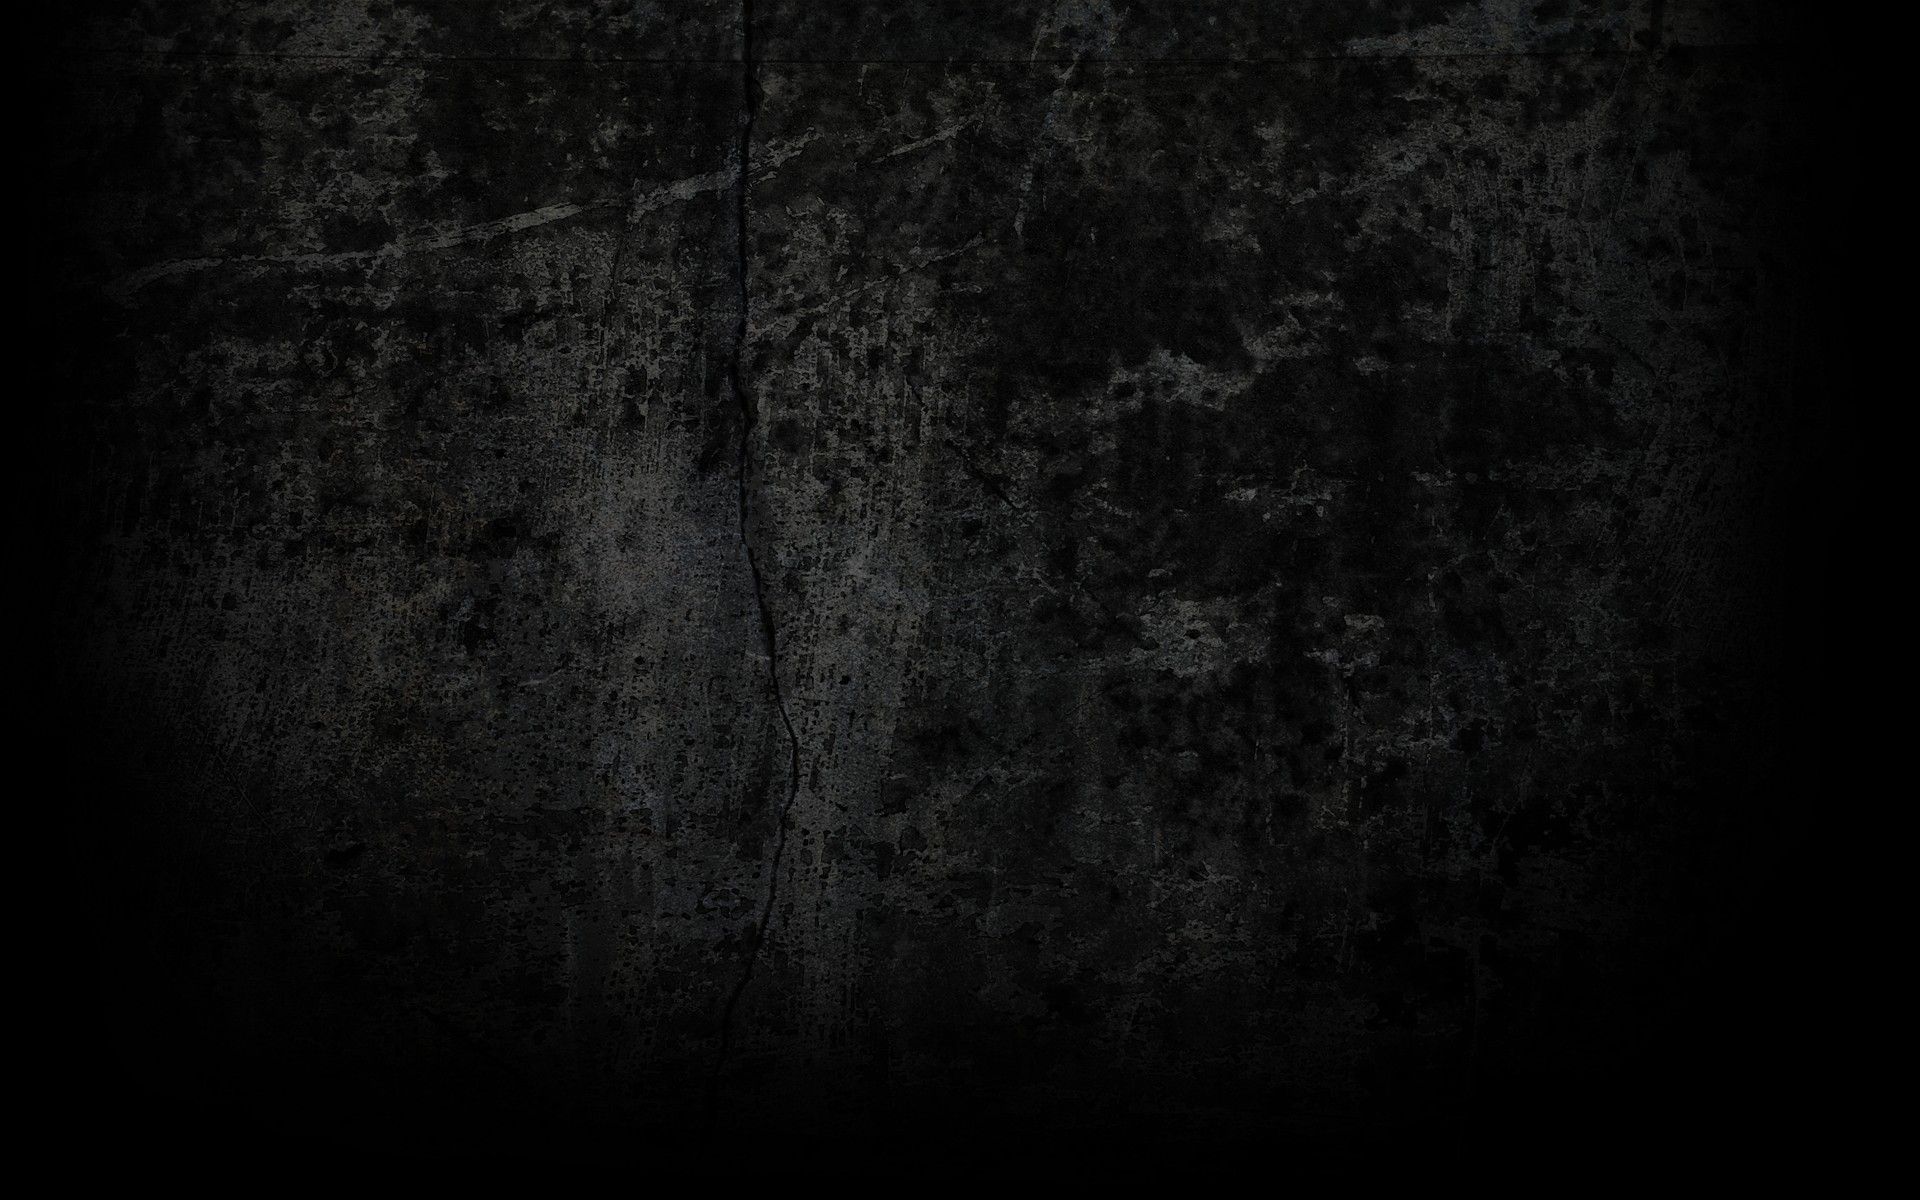 A dark grungy textured background image - Grunge